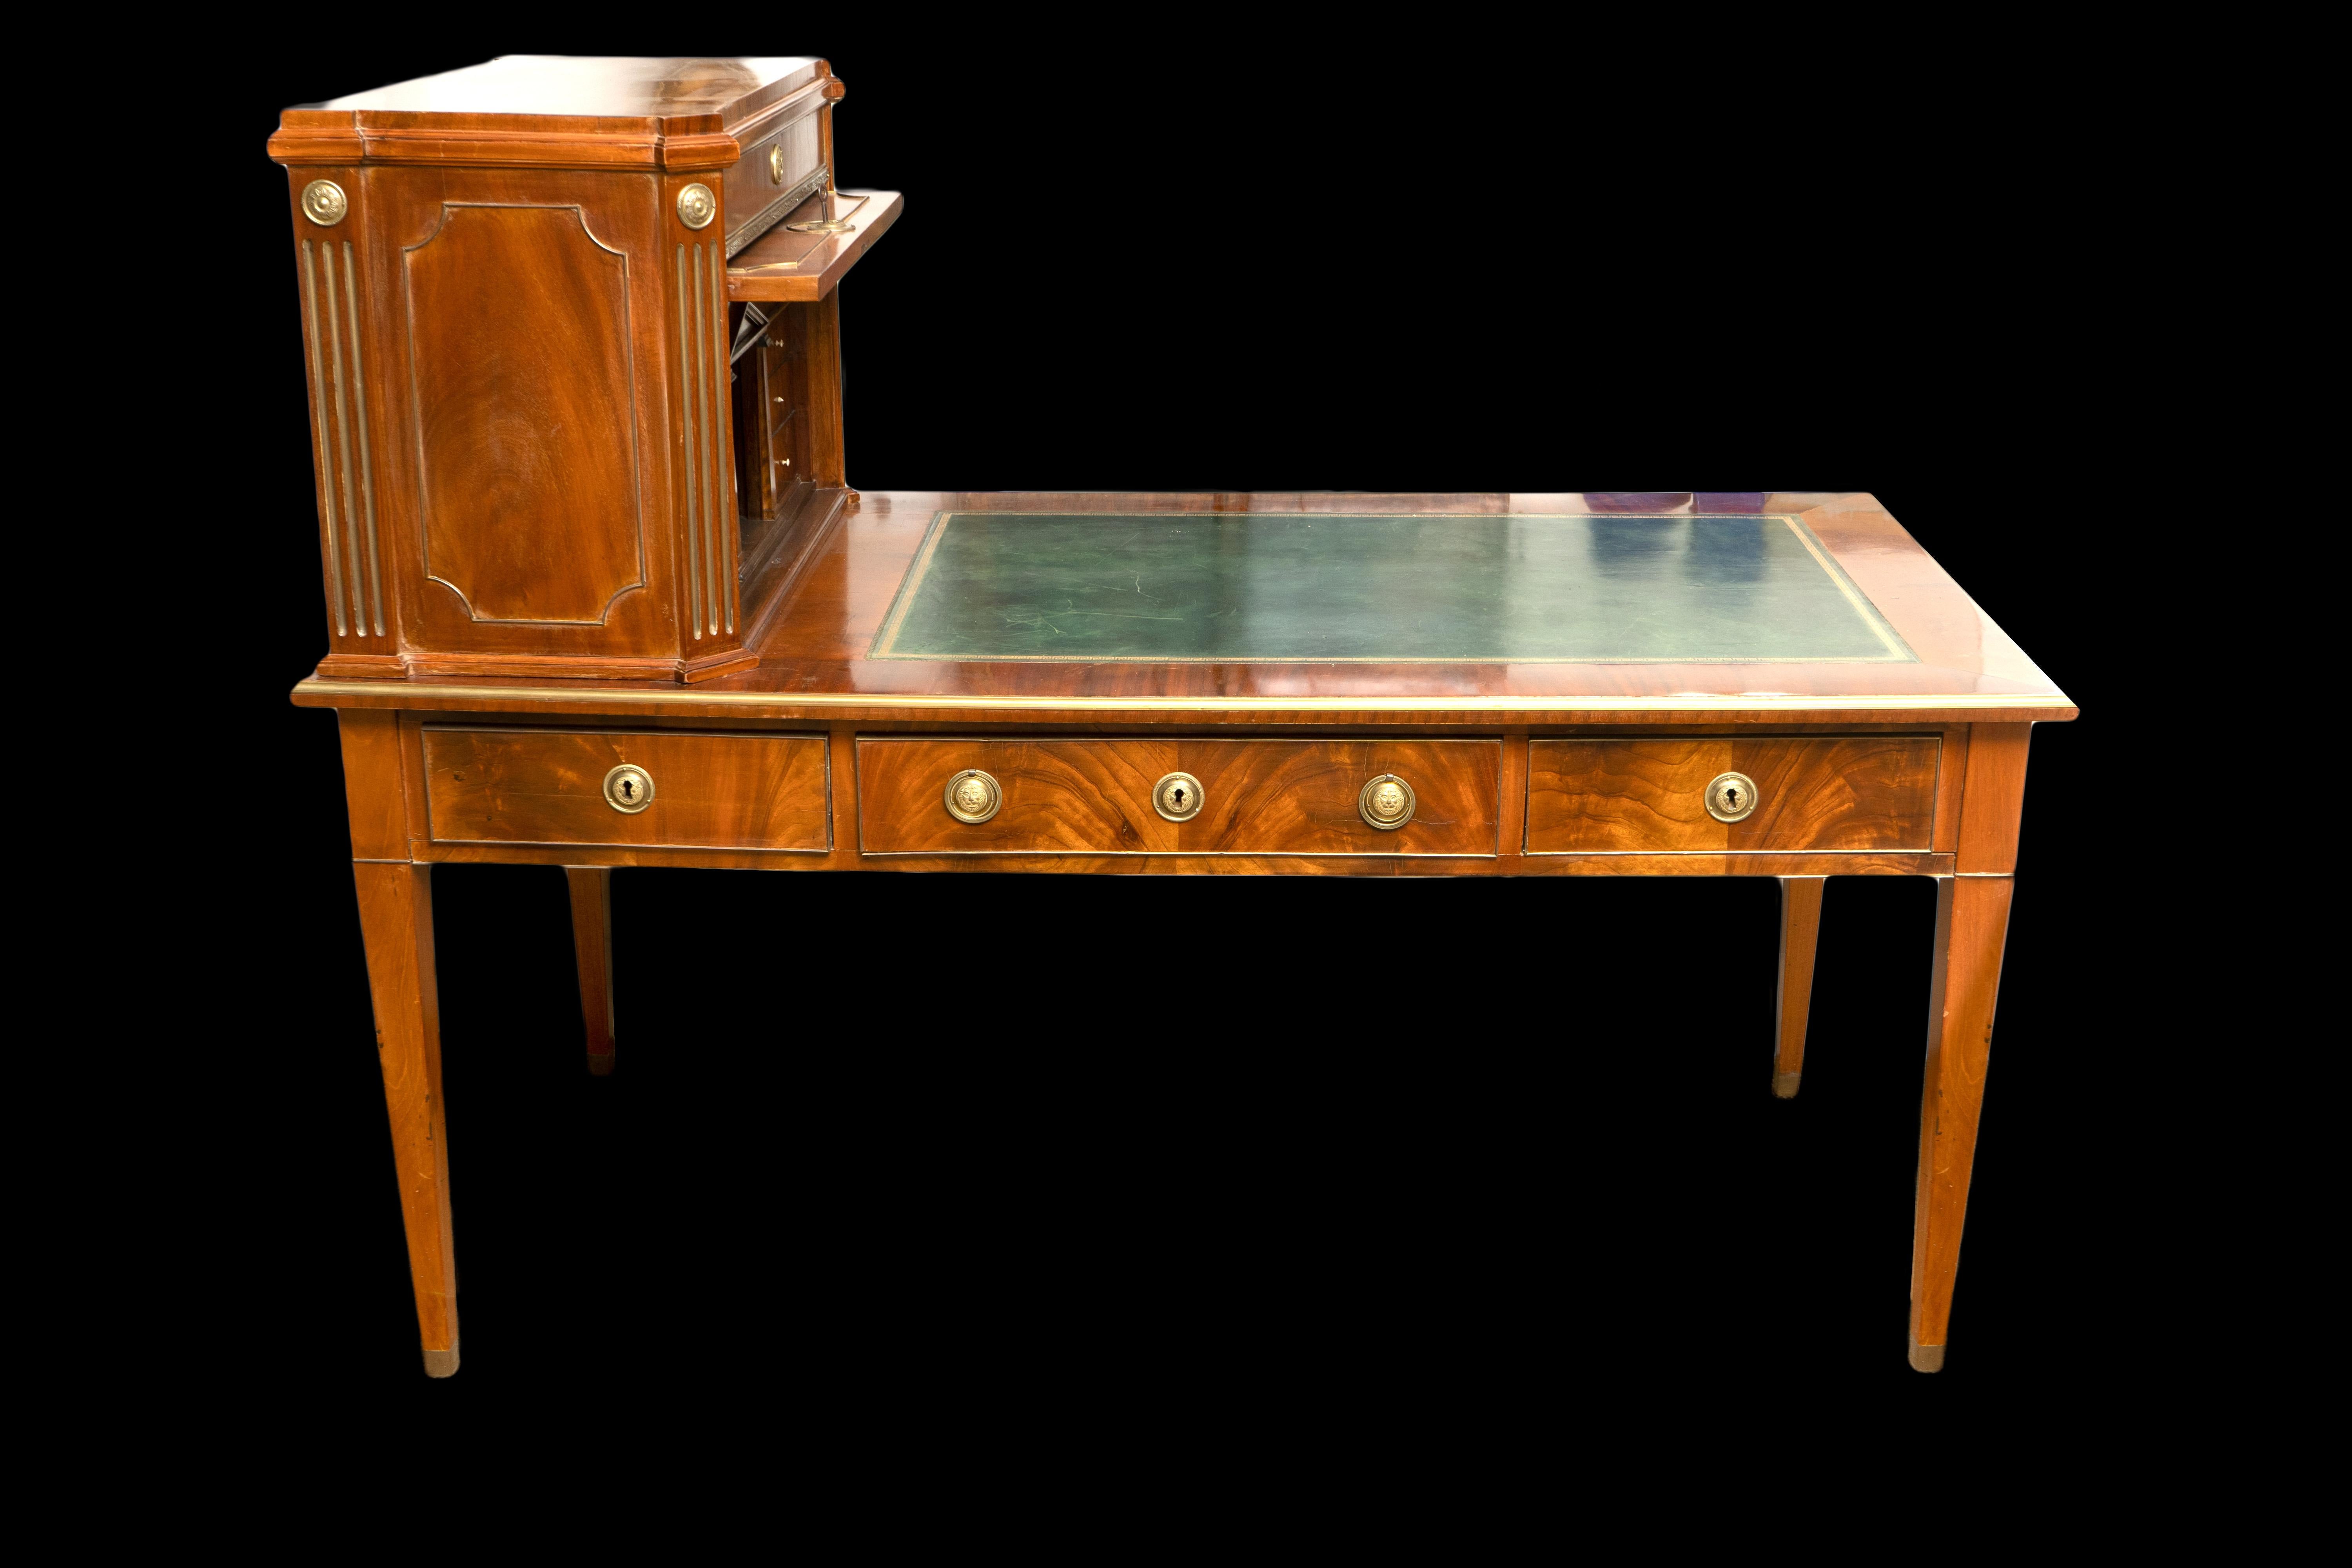 Dieser exquisite Schreibtisch ist ein wahres Meisterwerk der Handwerkskunst des neunzehnten Jahrhunderts. Der Schreibtisch ist aus reich gemasertem Mahagoni gefertigt und mit exquisiten Bronzebeschlägen verziert, die dem klassischen Design einen